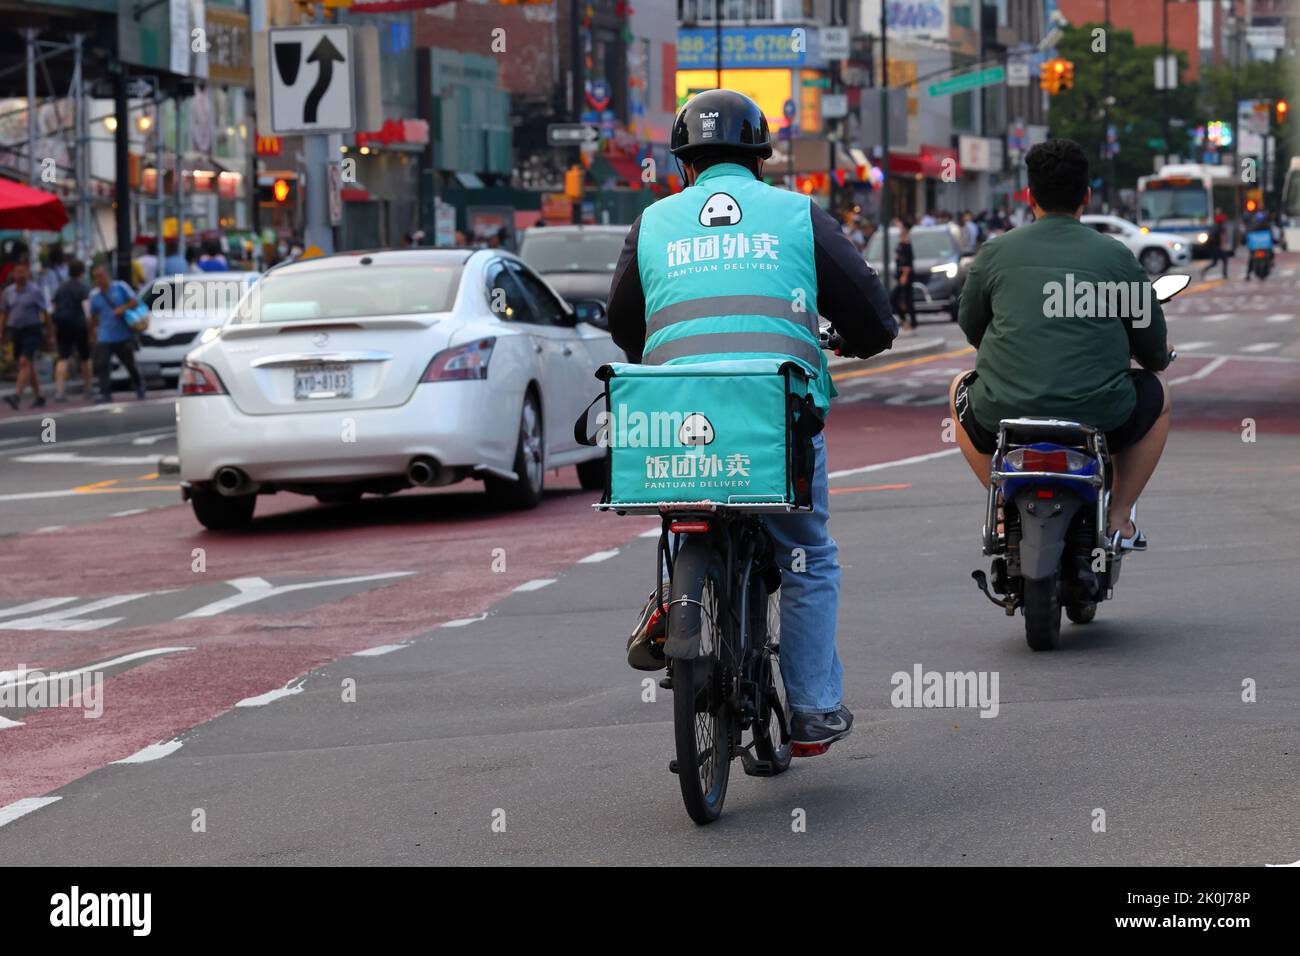 Un addetto alla consegna Fantuan su una e-bike a Downtown Flushing, New York. Fantuan 飯糰外賣 Asian food delivery 法拉盛, 法拉盛華埠, 華裔美國人, 紐約 Foto Stock